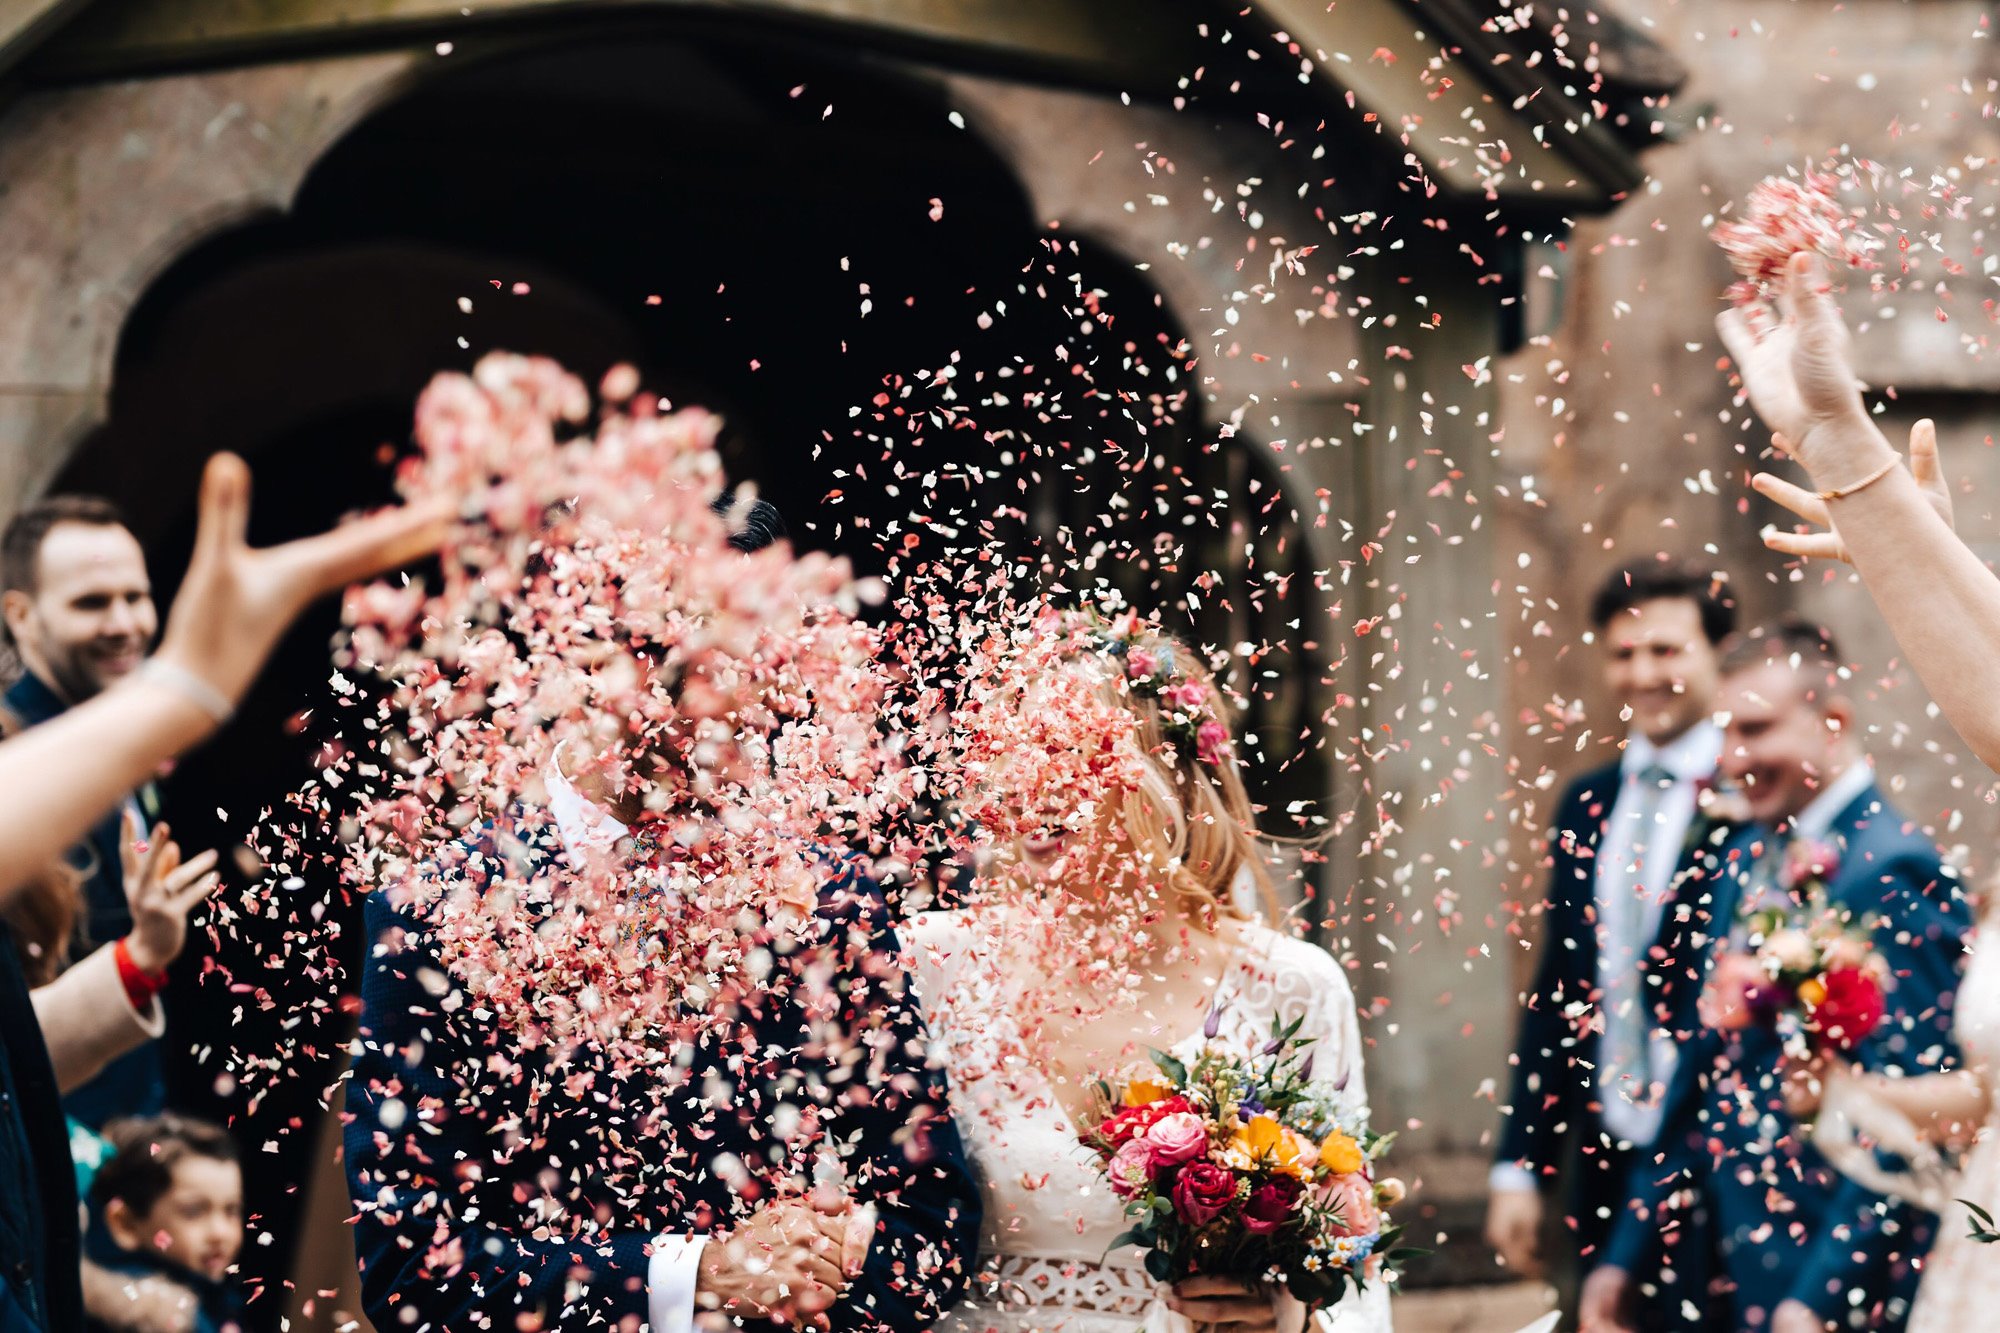 Fun Photographer's Top Tips For Epic Wedding Confetti Photos